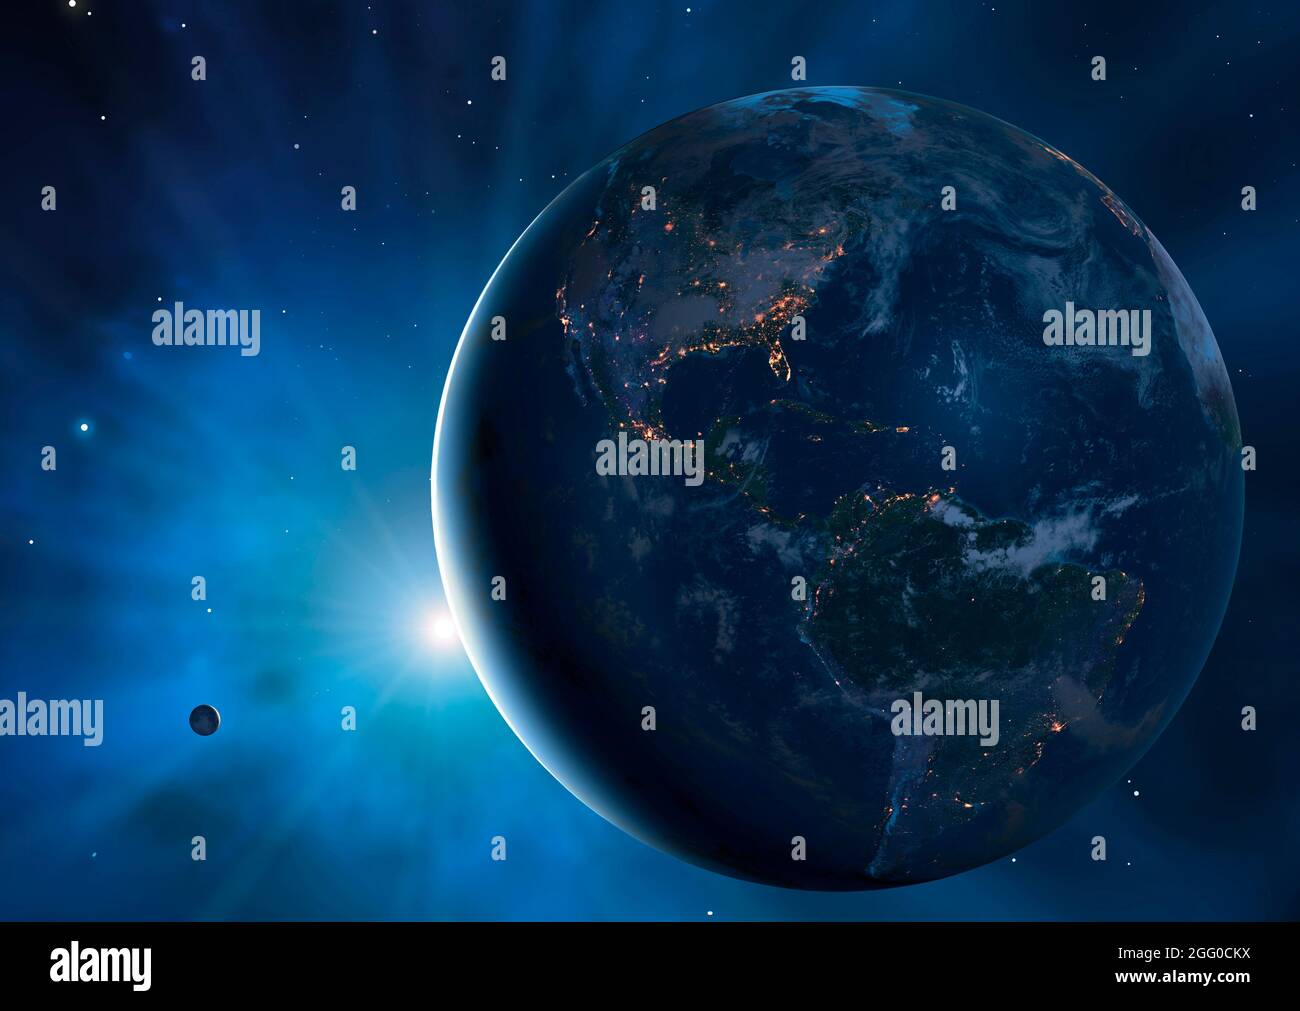 Abbildung von Erde und Mond, die einen großen Teil des Planeten in Dunkelheit zeigen. Städte werden glitzern gesehen und definieren die Ränder der Kontinente. Diese Ansicht zeigt Nord- und Südamerika, der Mond ist links davon. Stockfoto